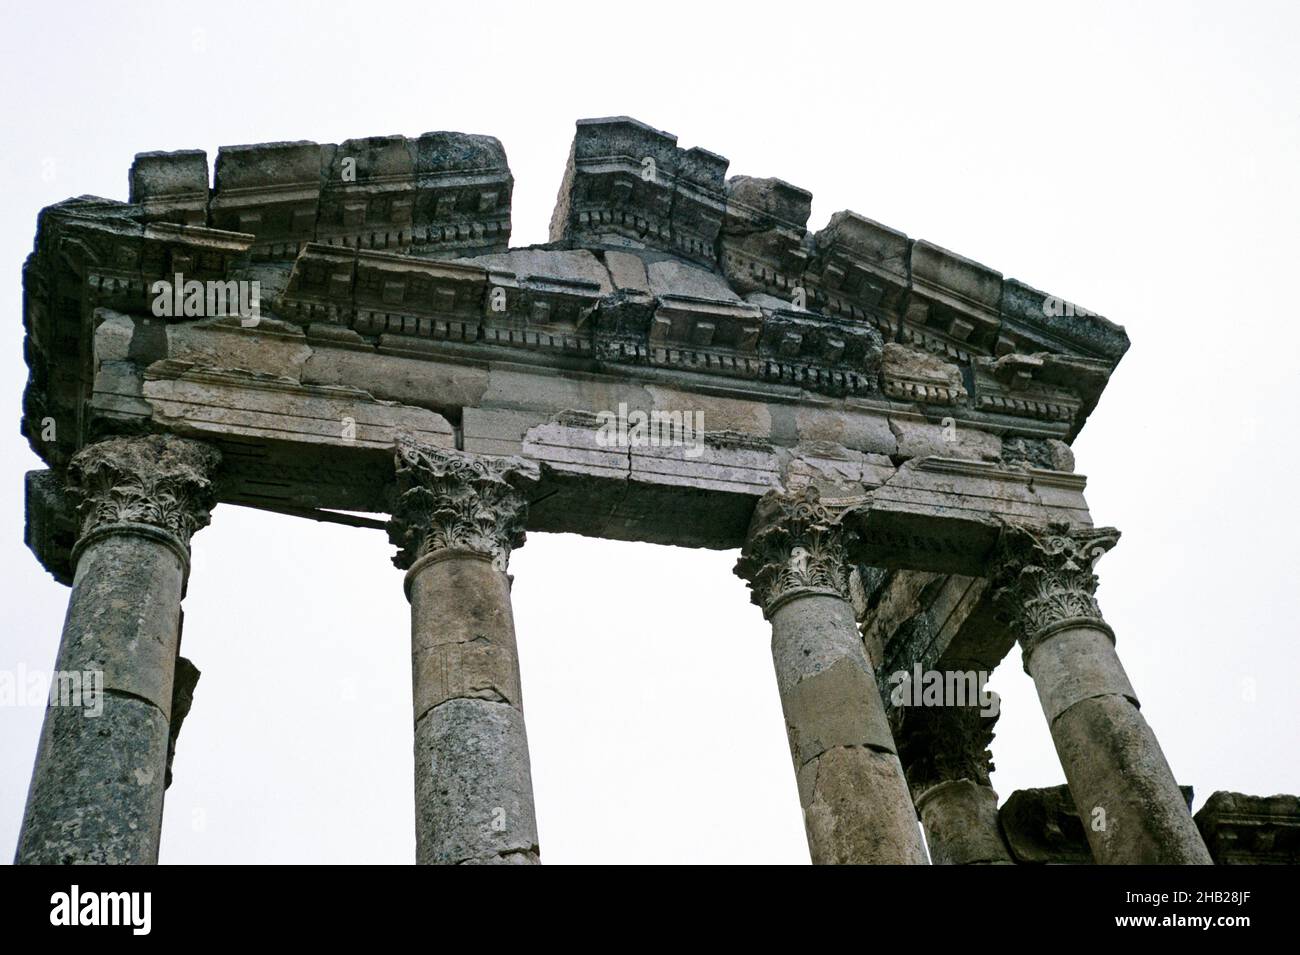 Ruines de bâtiments romains sur le site archéologique d'Apamea, Syrie en 1998 Banque D'Images